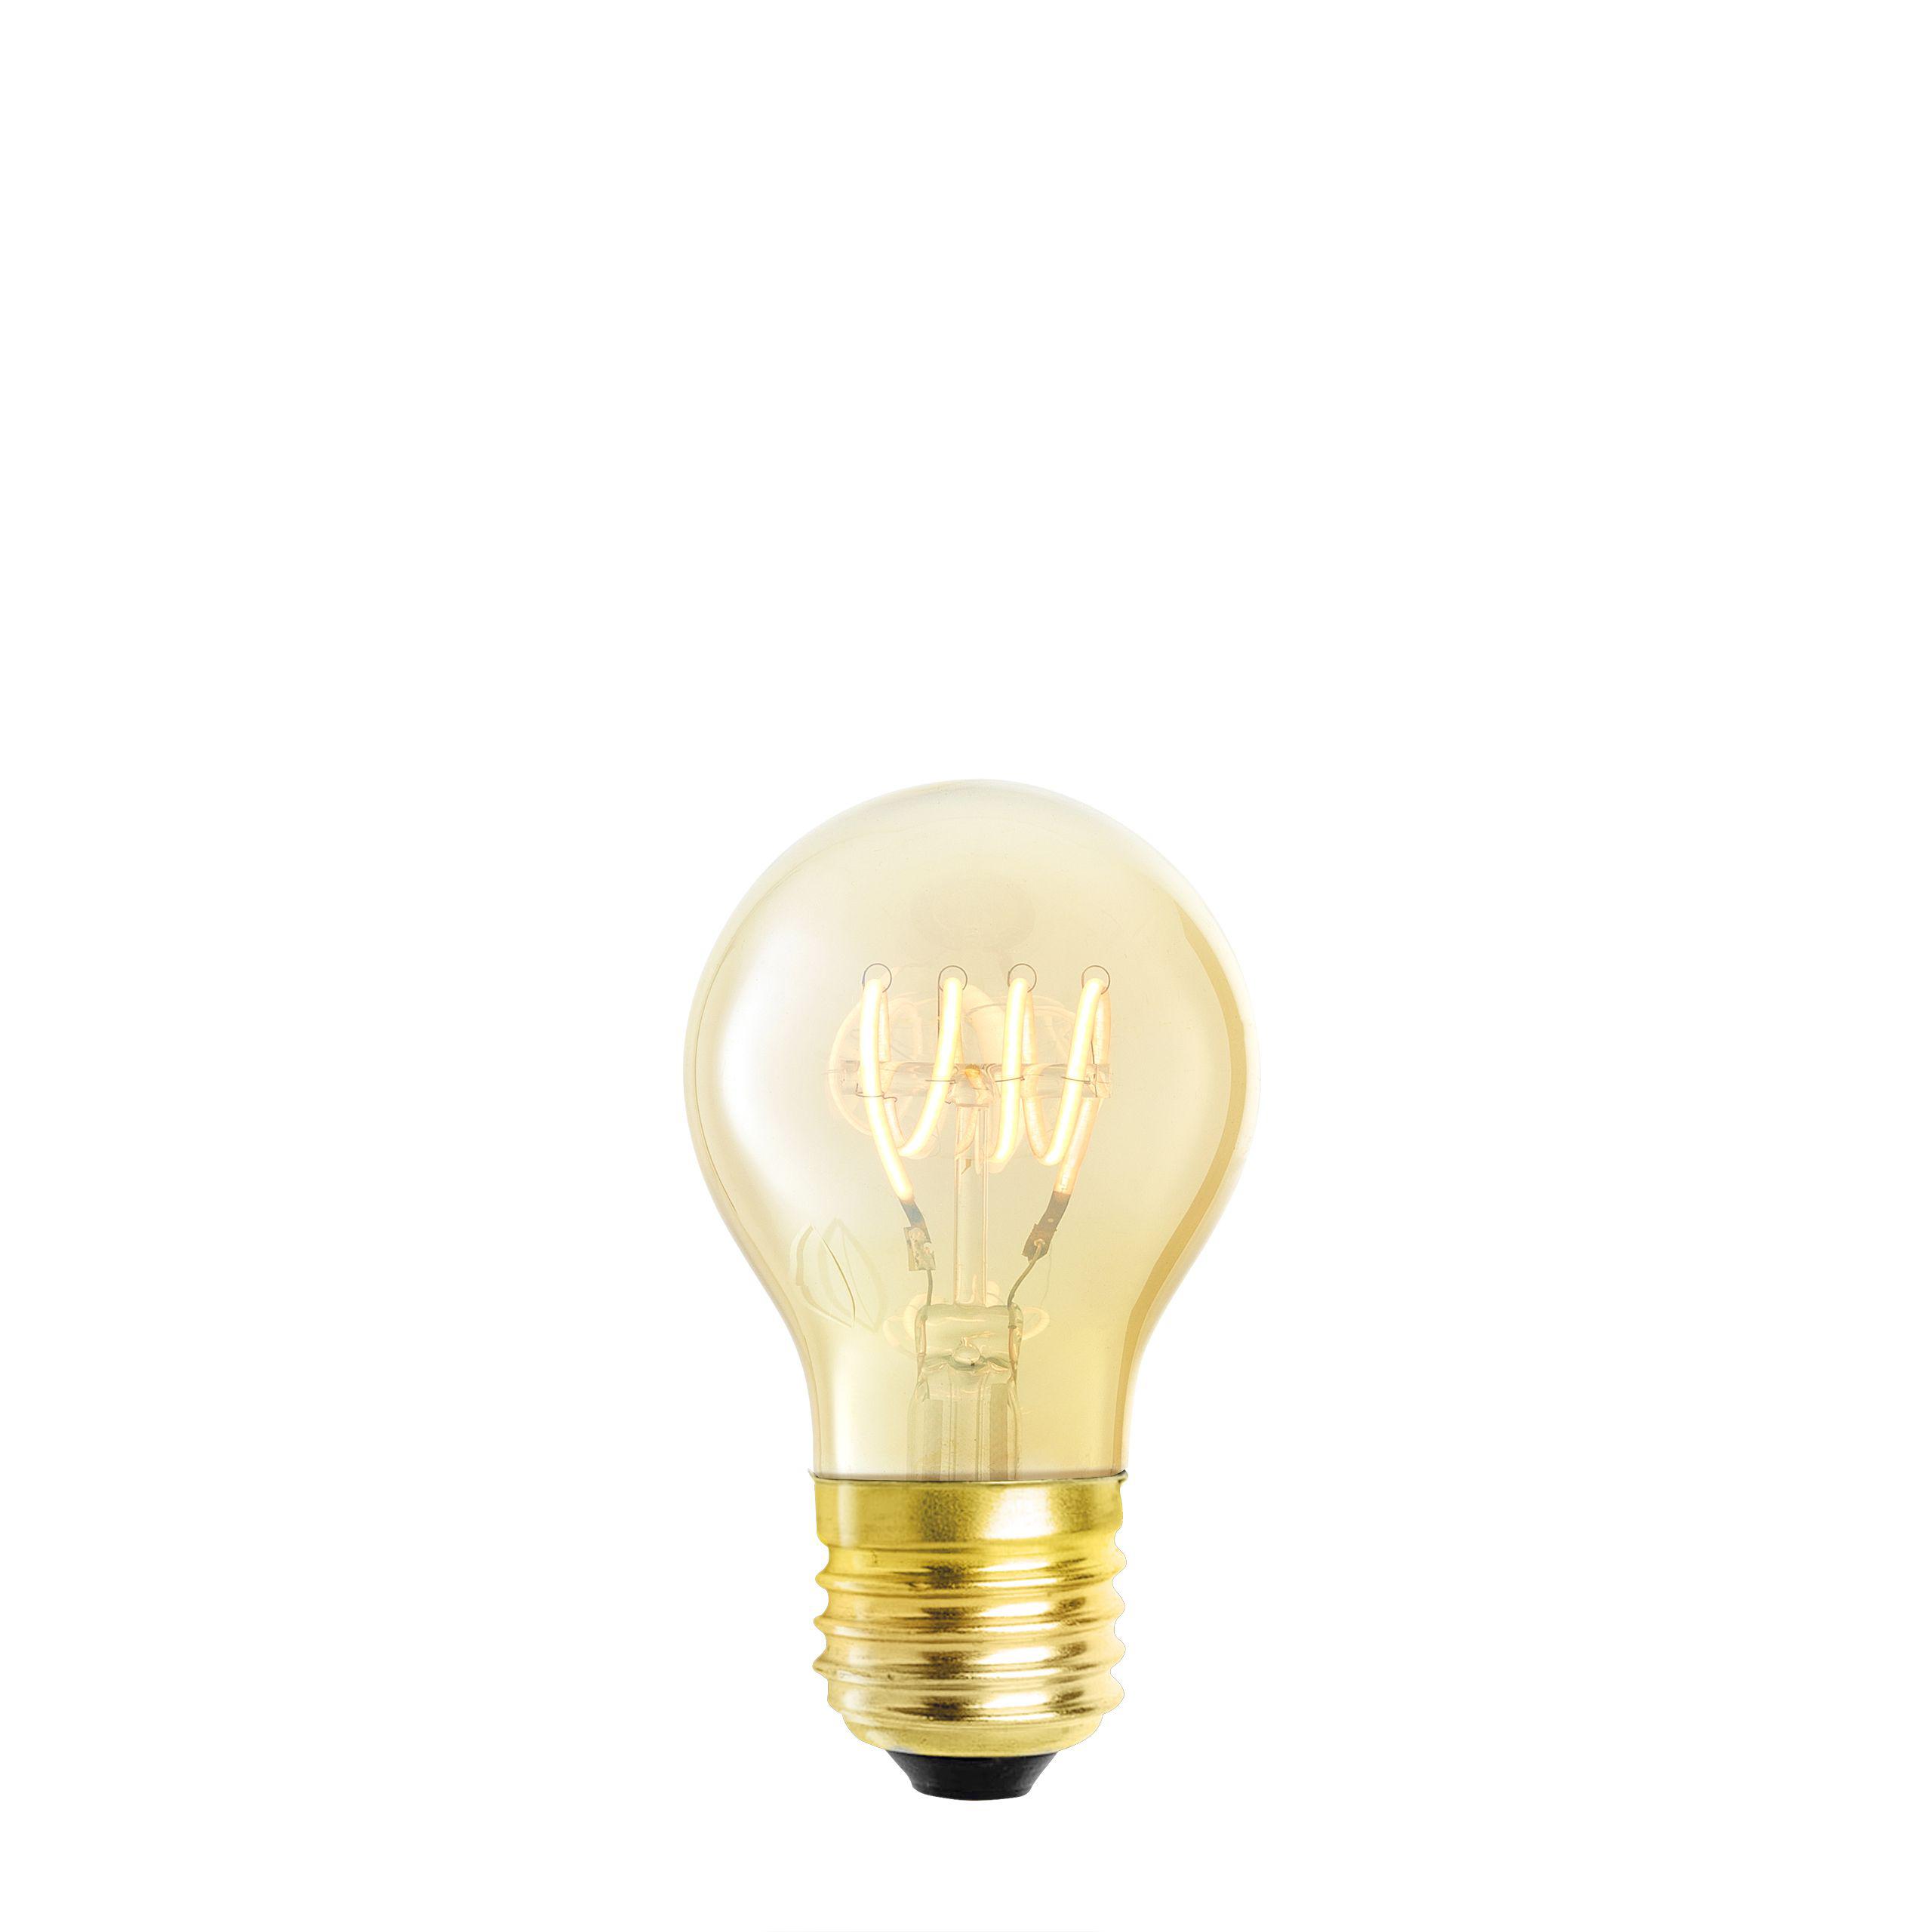 Купить Лампочка LED Bulb A shape 4W E27 set of 4 в интернет-магазине roooms.ru